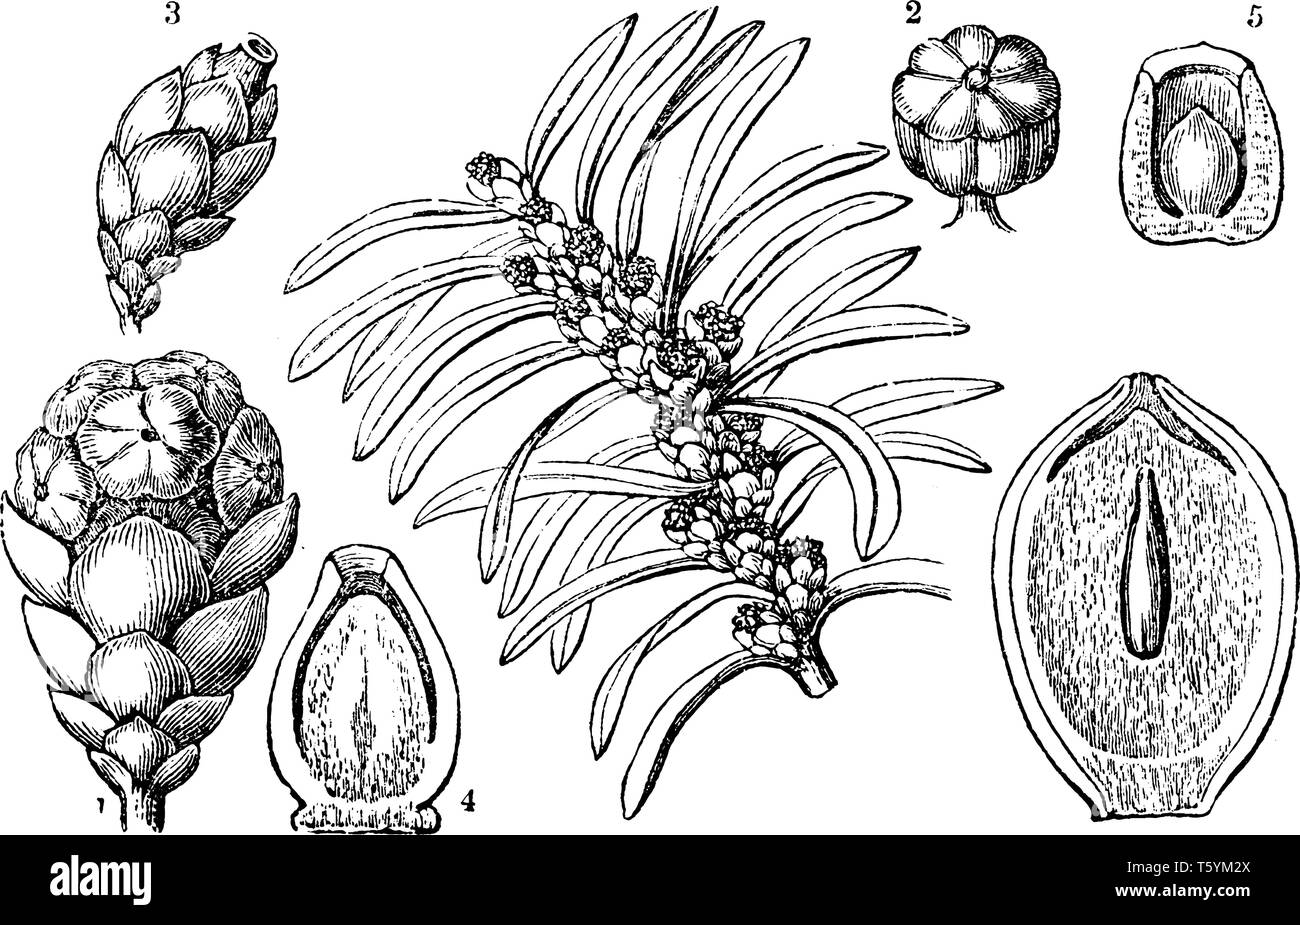 Ein Bild mit verschiedenen Teilen der Europäischen Eibe auch als Taxus Whipplei, vintage Strichzeichnung oder Gravur Abbildung bekannt. Stock Vektor